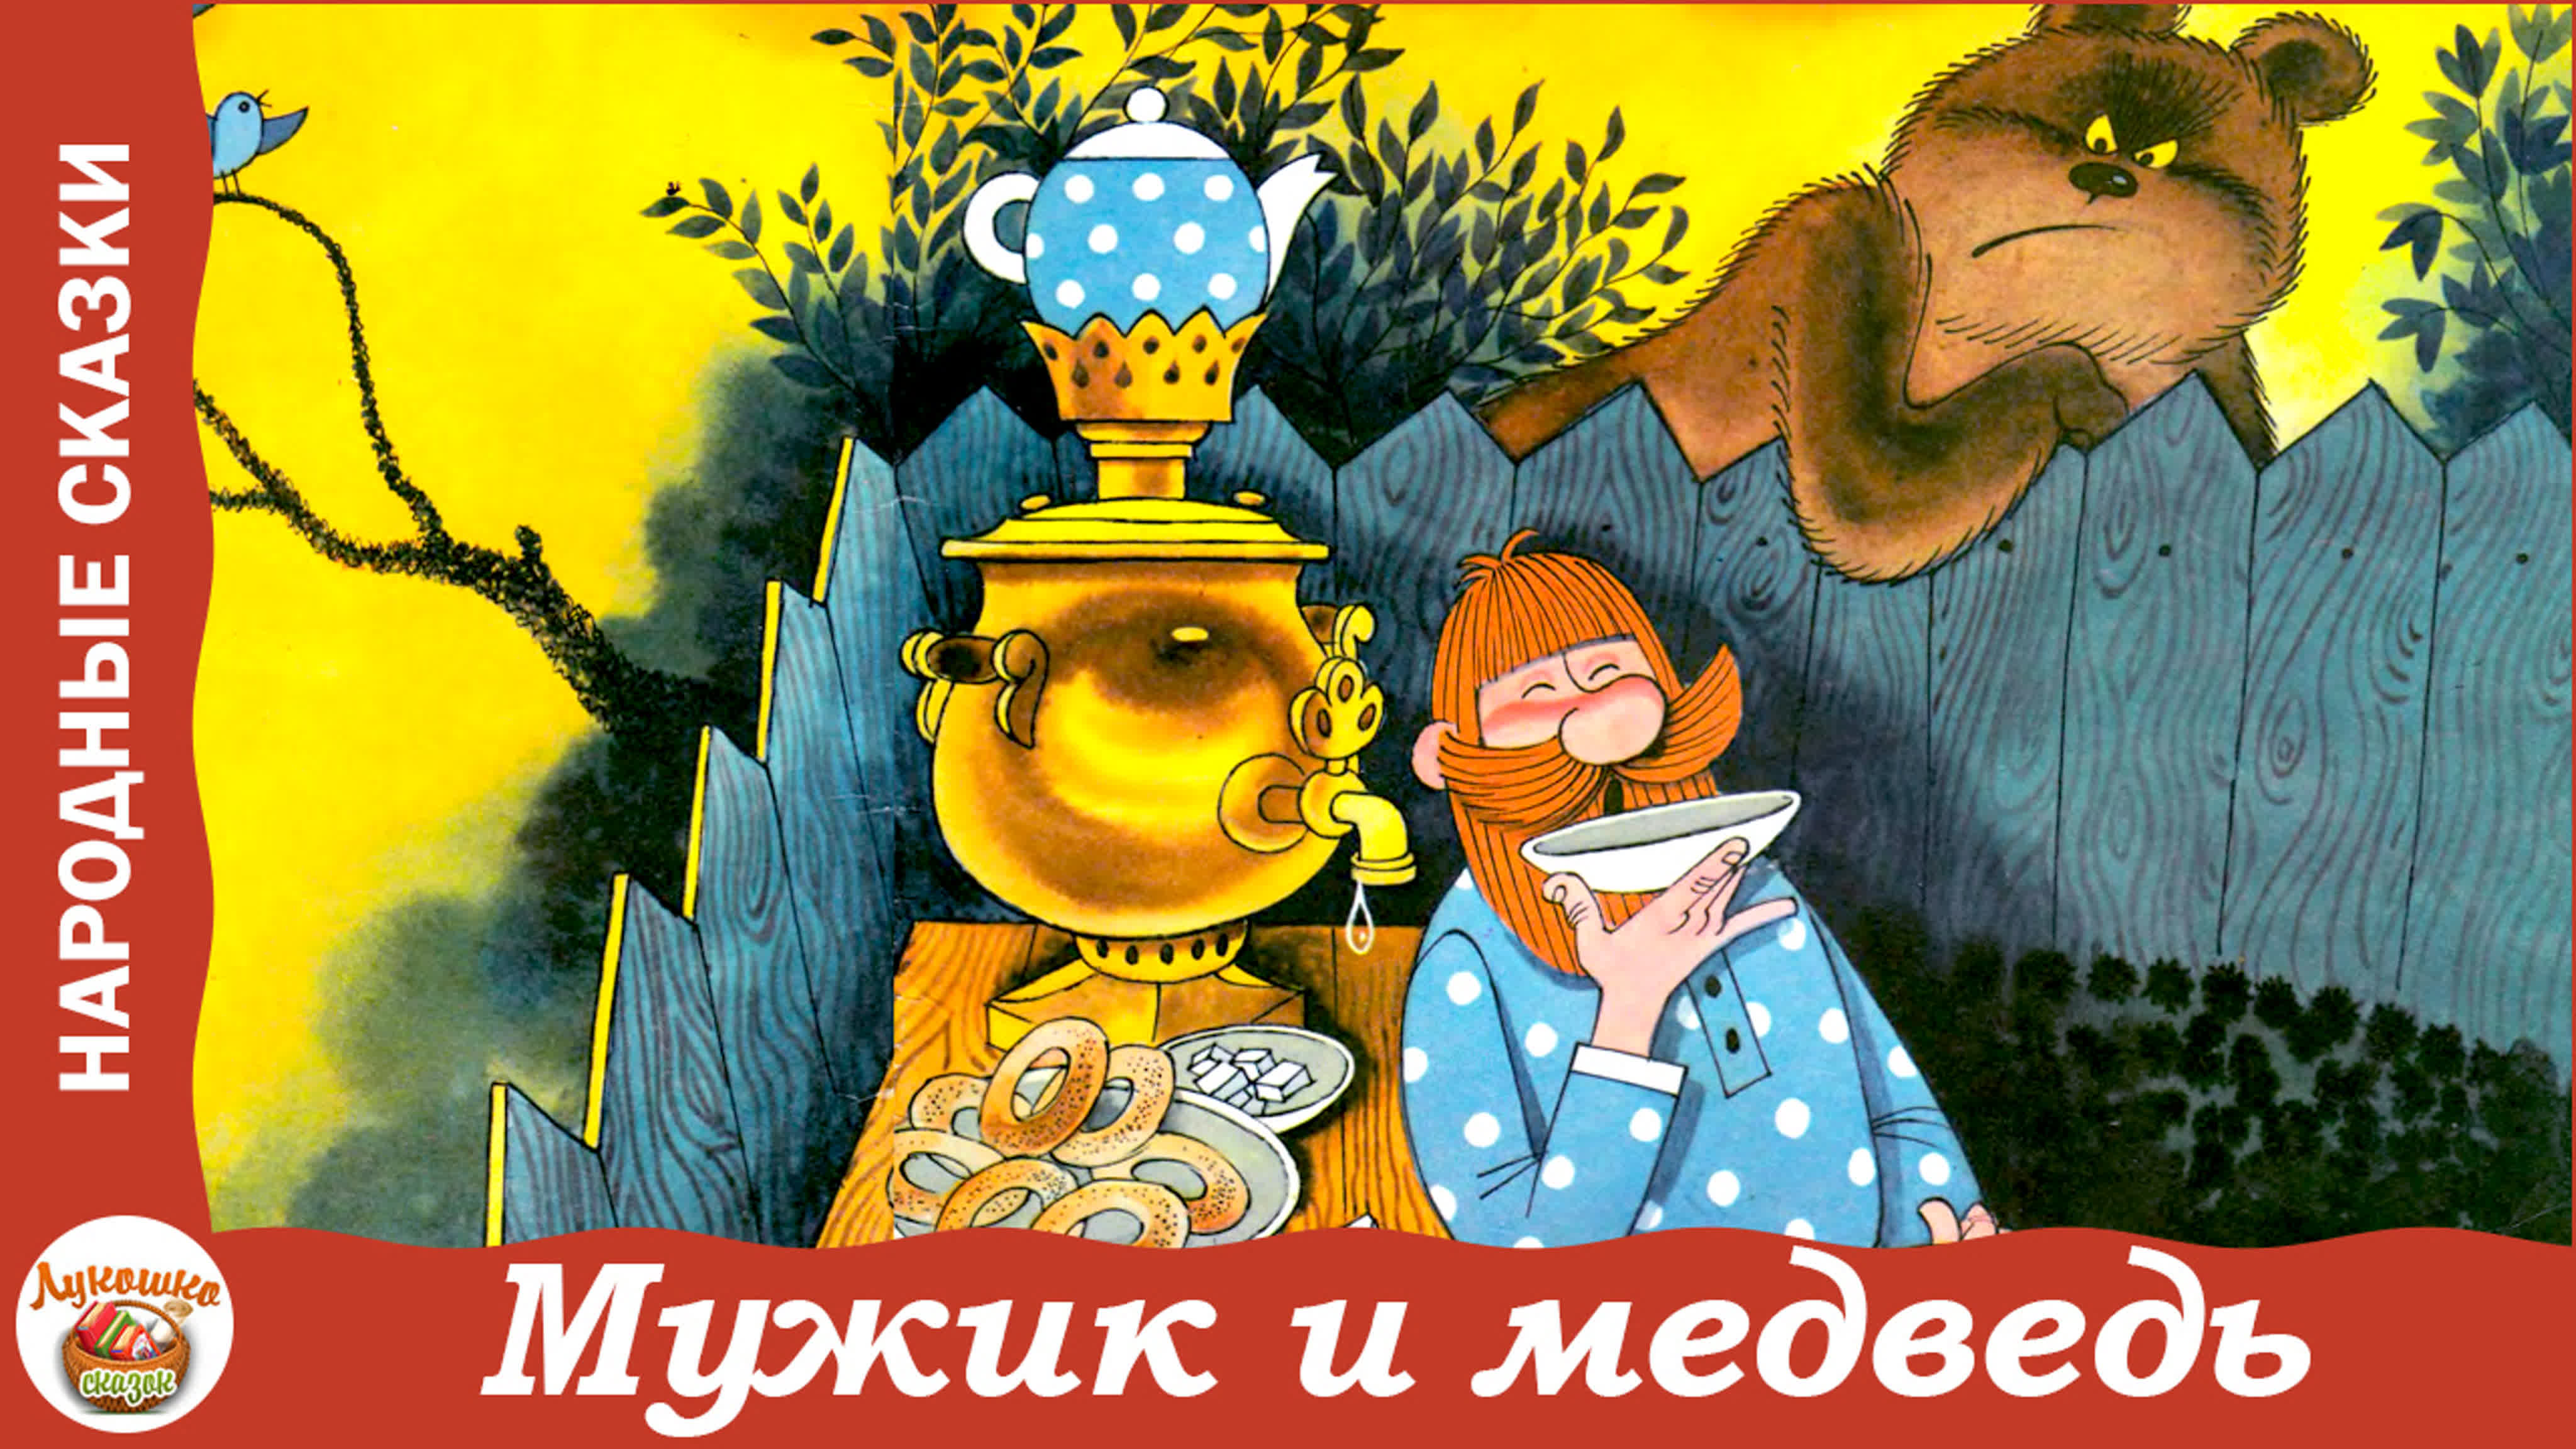 Мужик и медведь русская народная сказка watch online